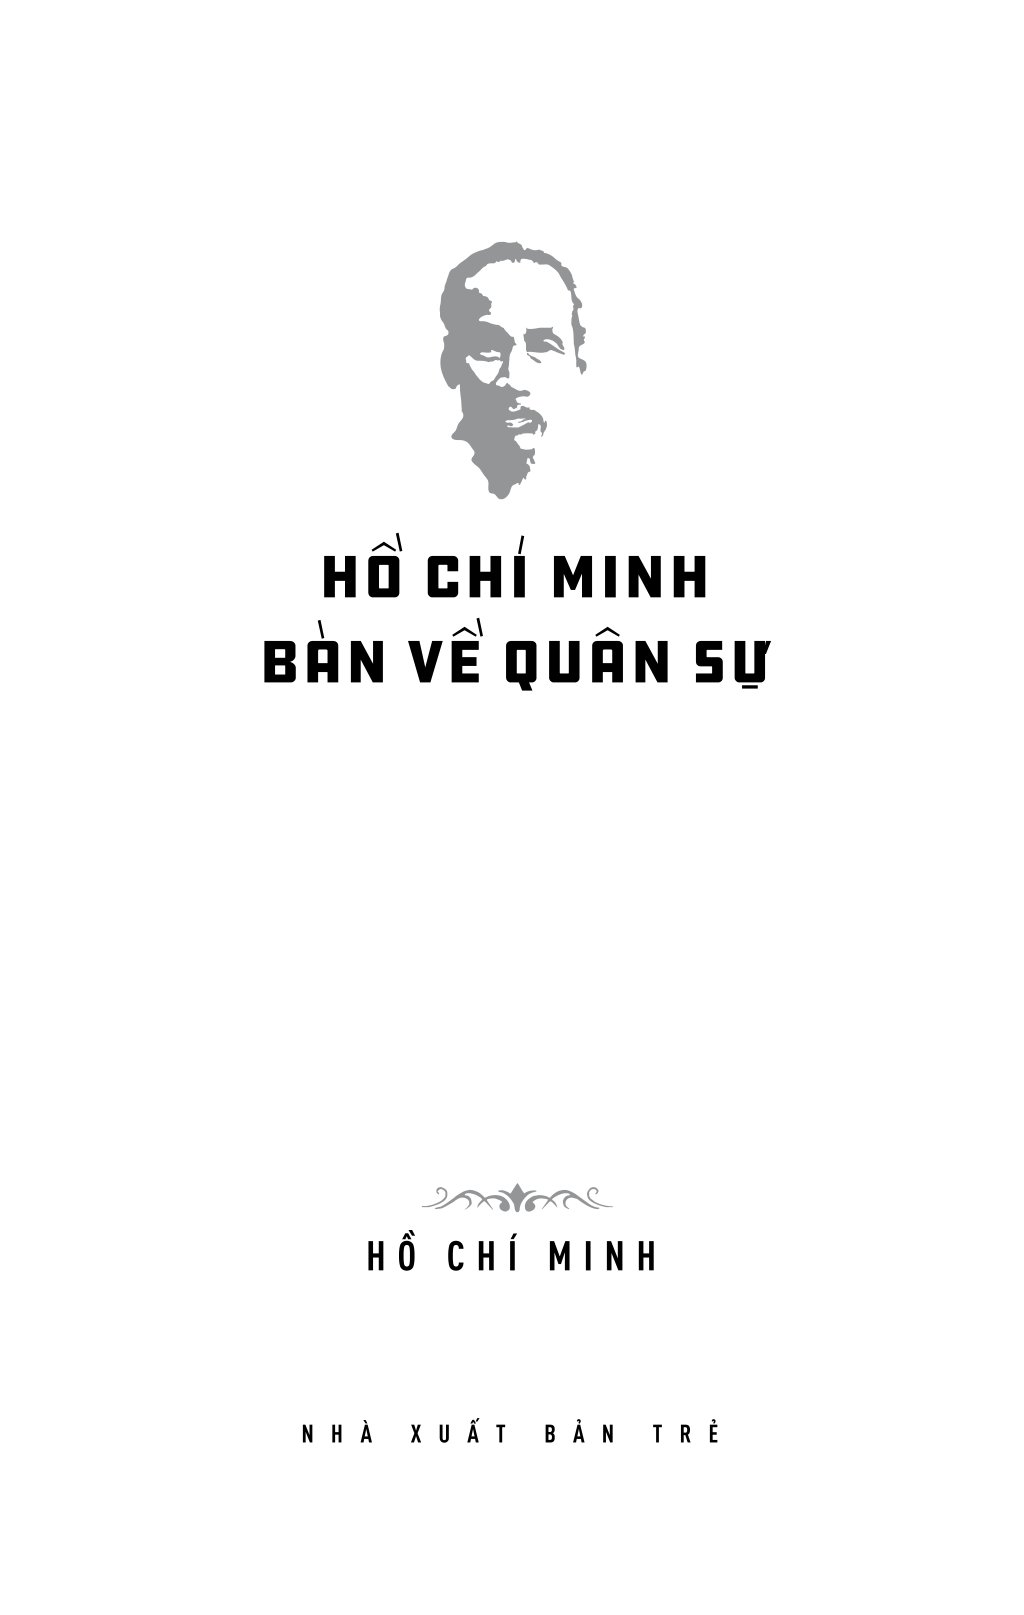 Di Sản Hồ Chí Minh - Hồ Chí Minh Bàn Về Quân Sự PDF